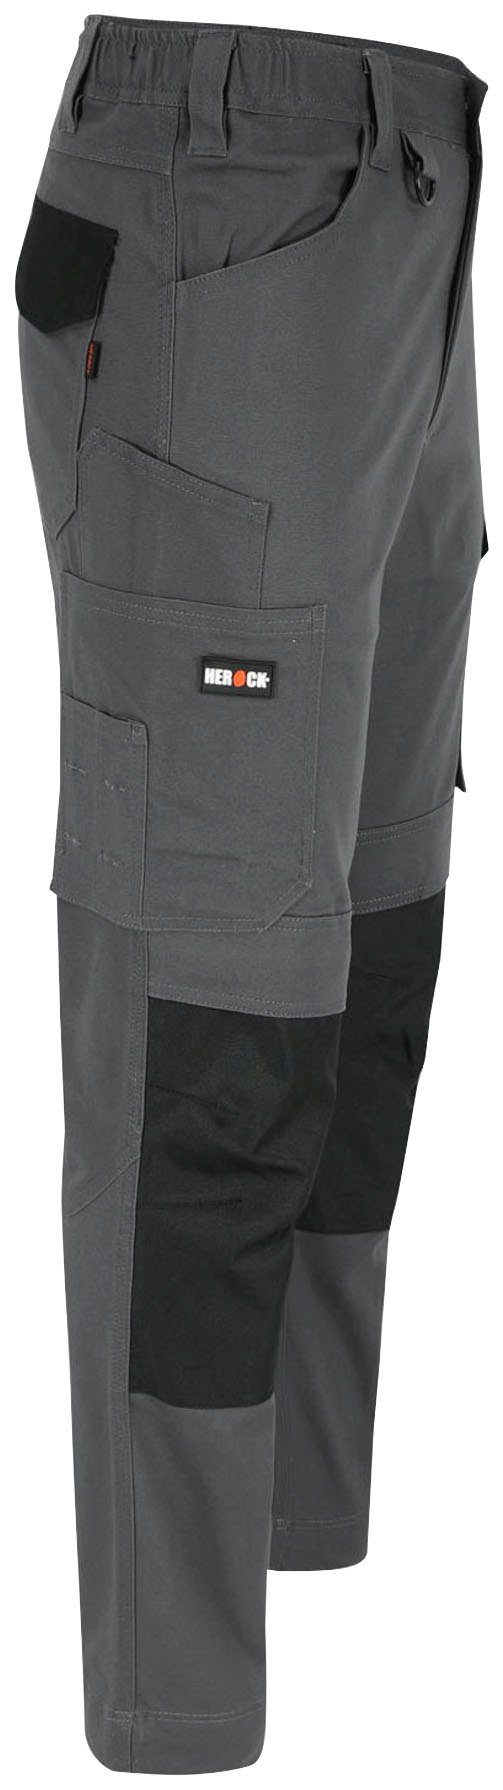 Herock Arbeitshose DERO Slim Multi-Pocket, grau 2-Wege-Stretch, Fit wasserabweisend Passform